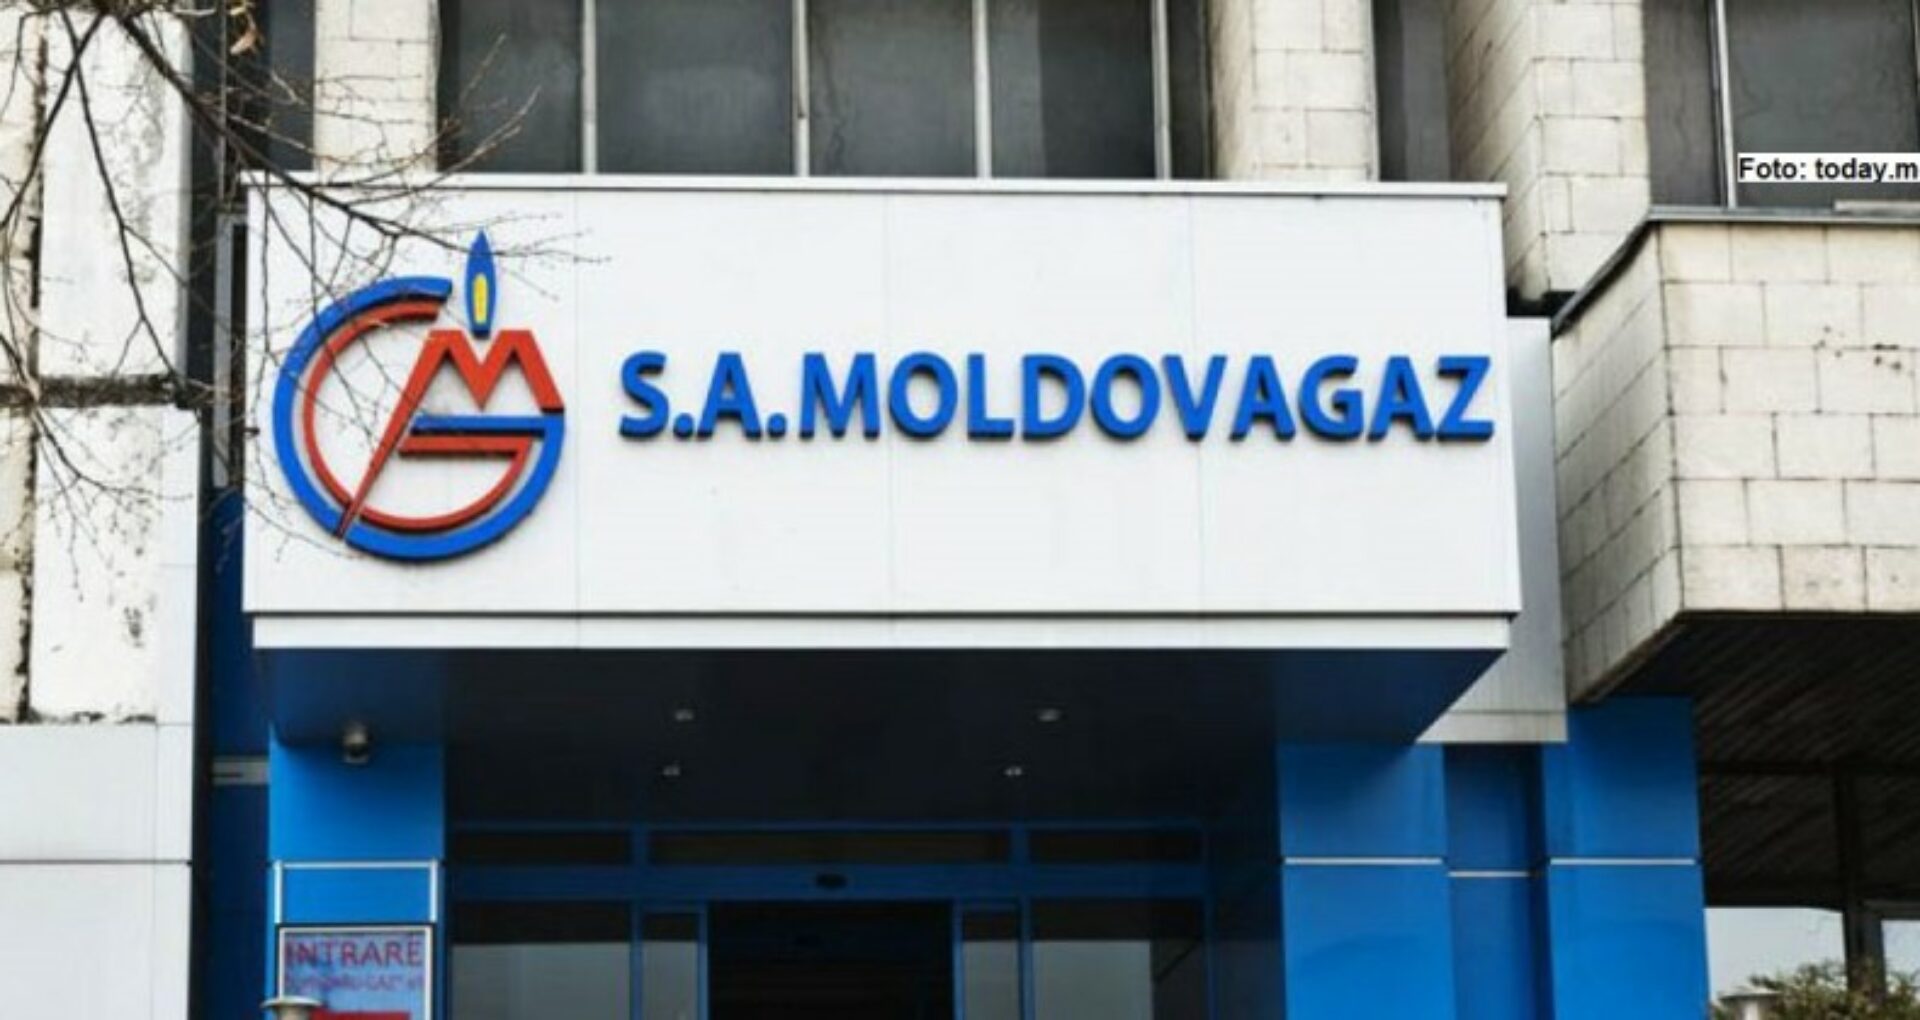 Moldovagaz anunță că a transferat către Gazprom plata pentru gazele naturale furnizate în decembrie 2021